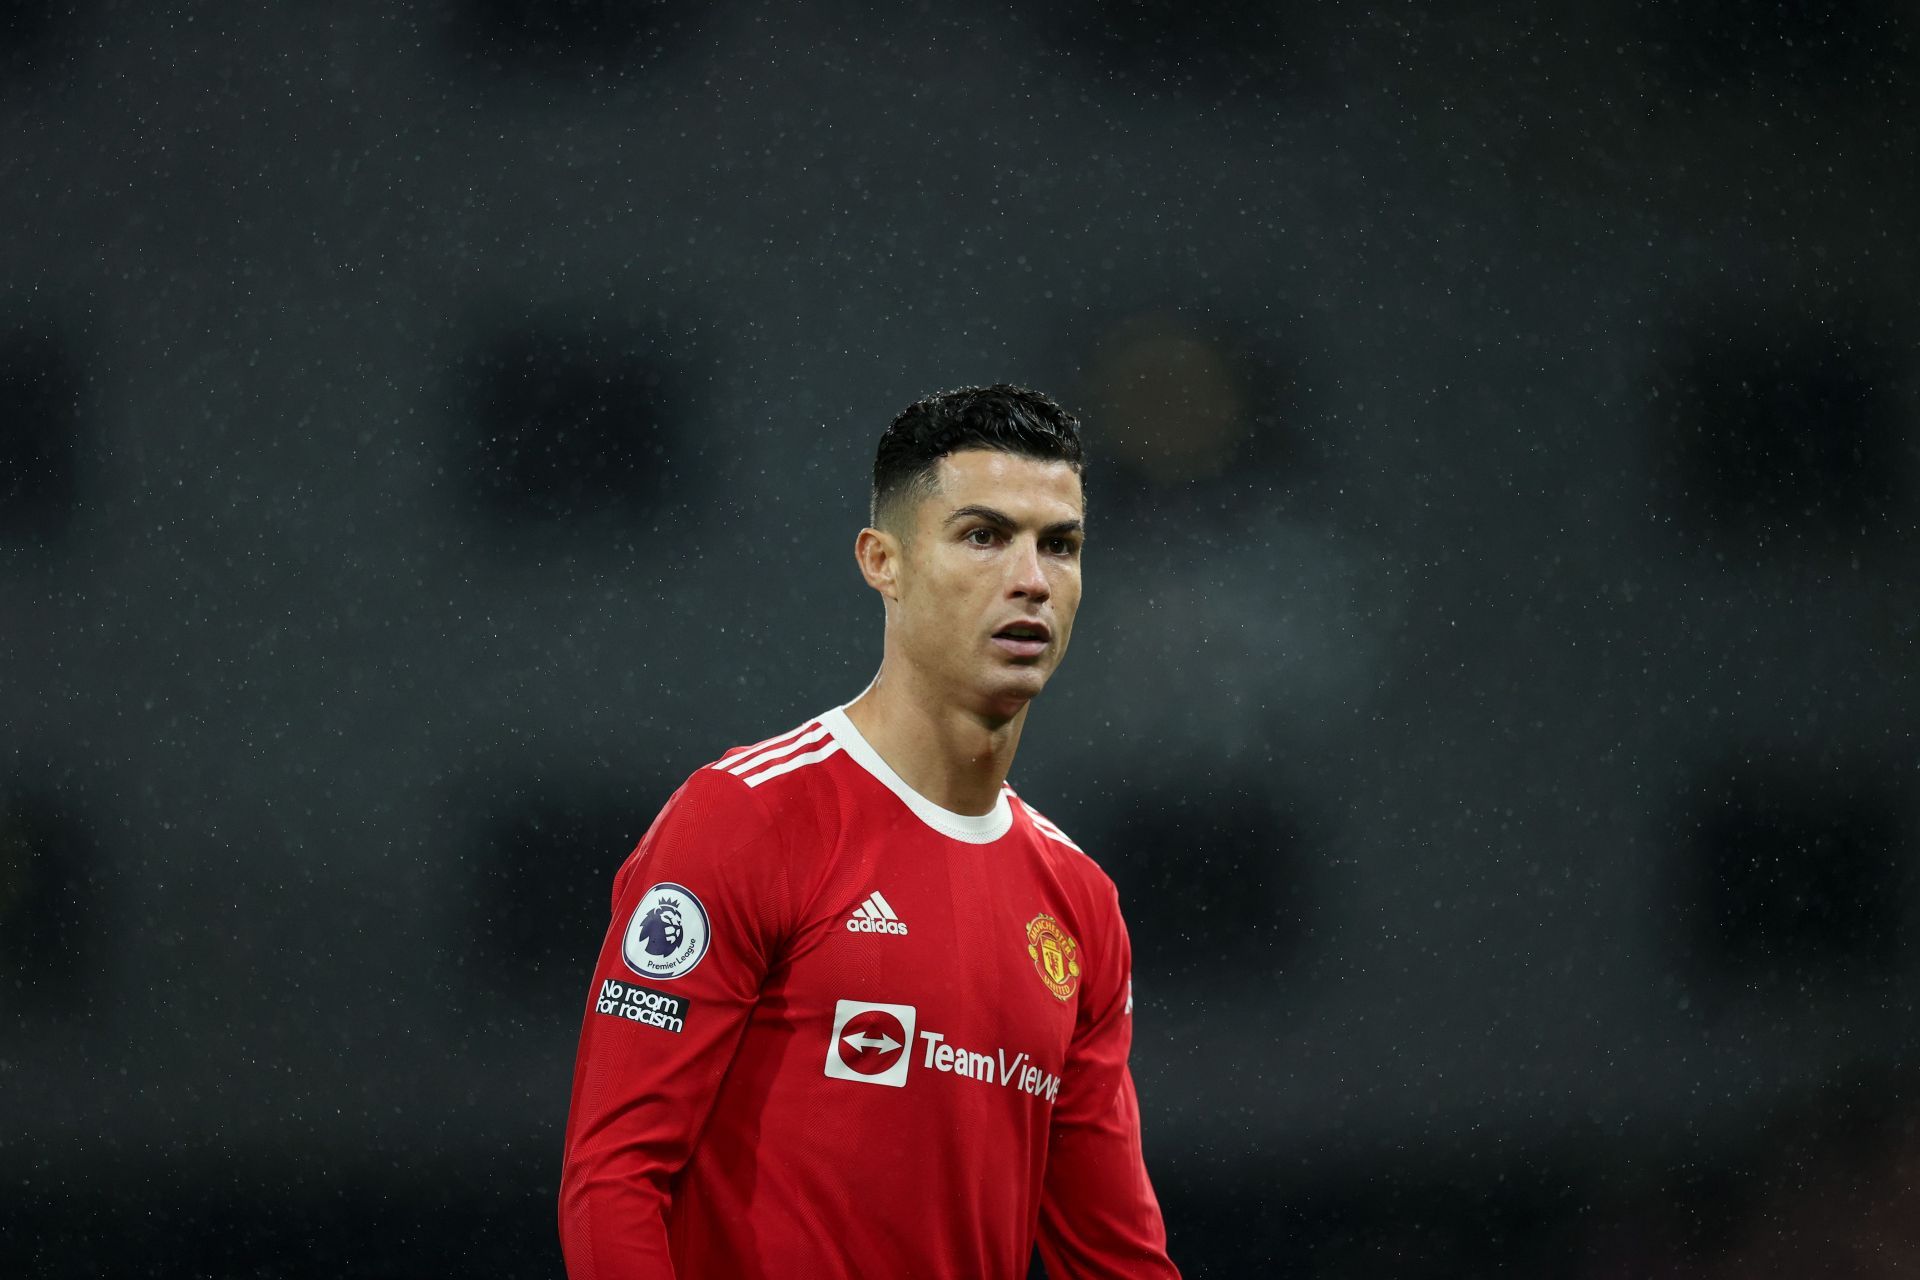  Cristiano Ronaldo of Manchester United